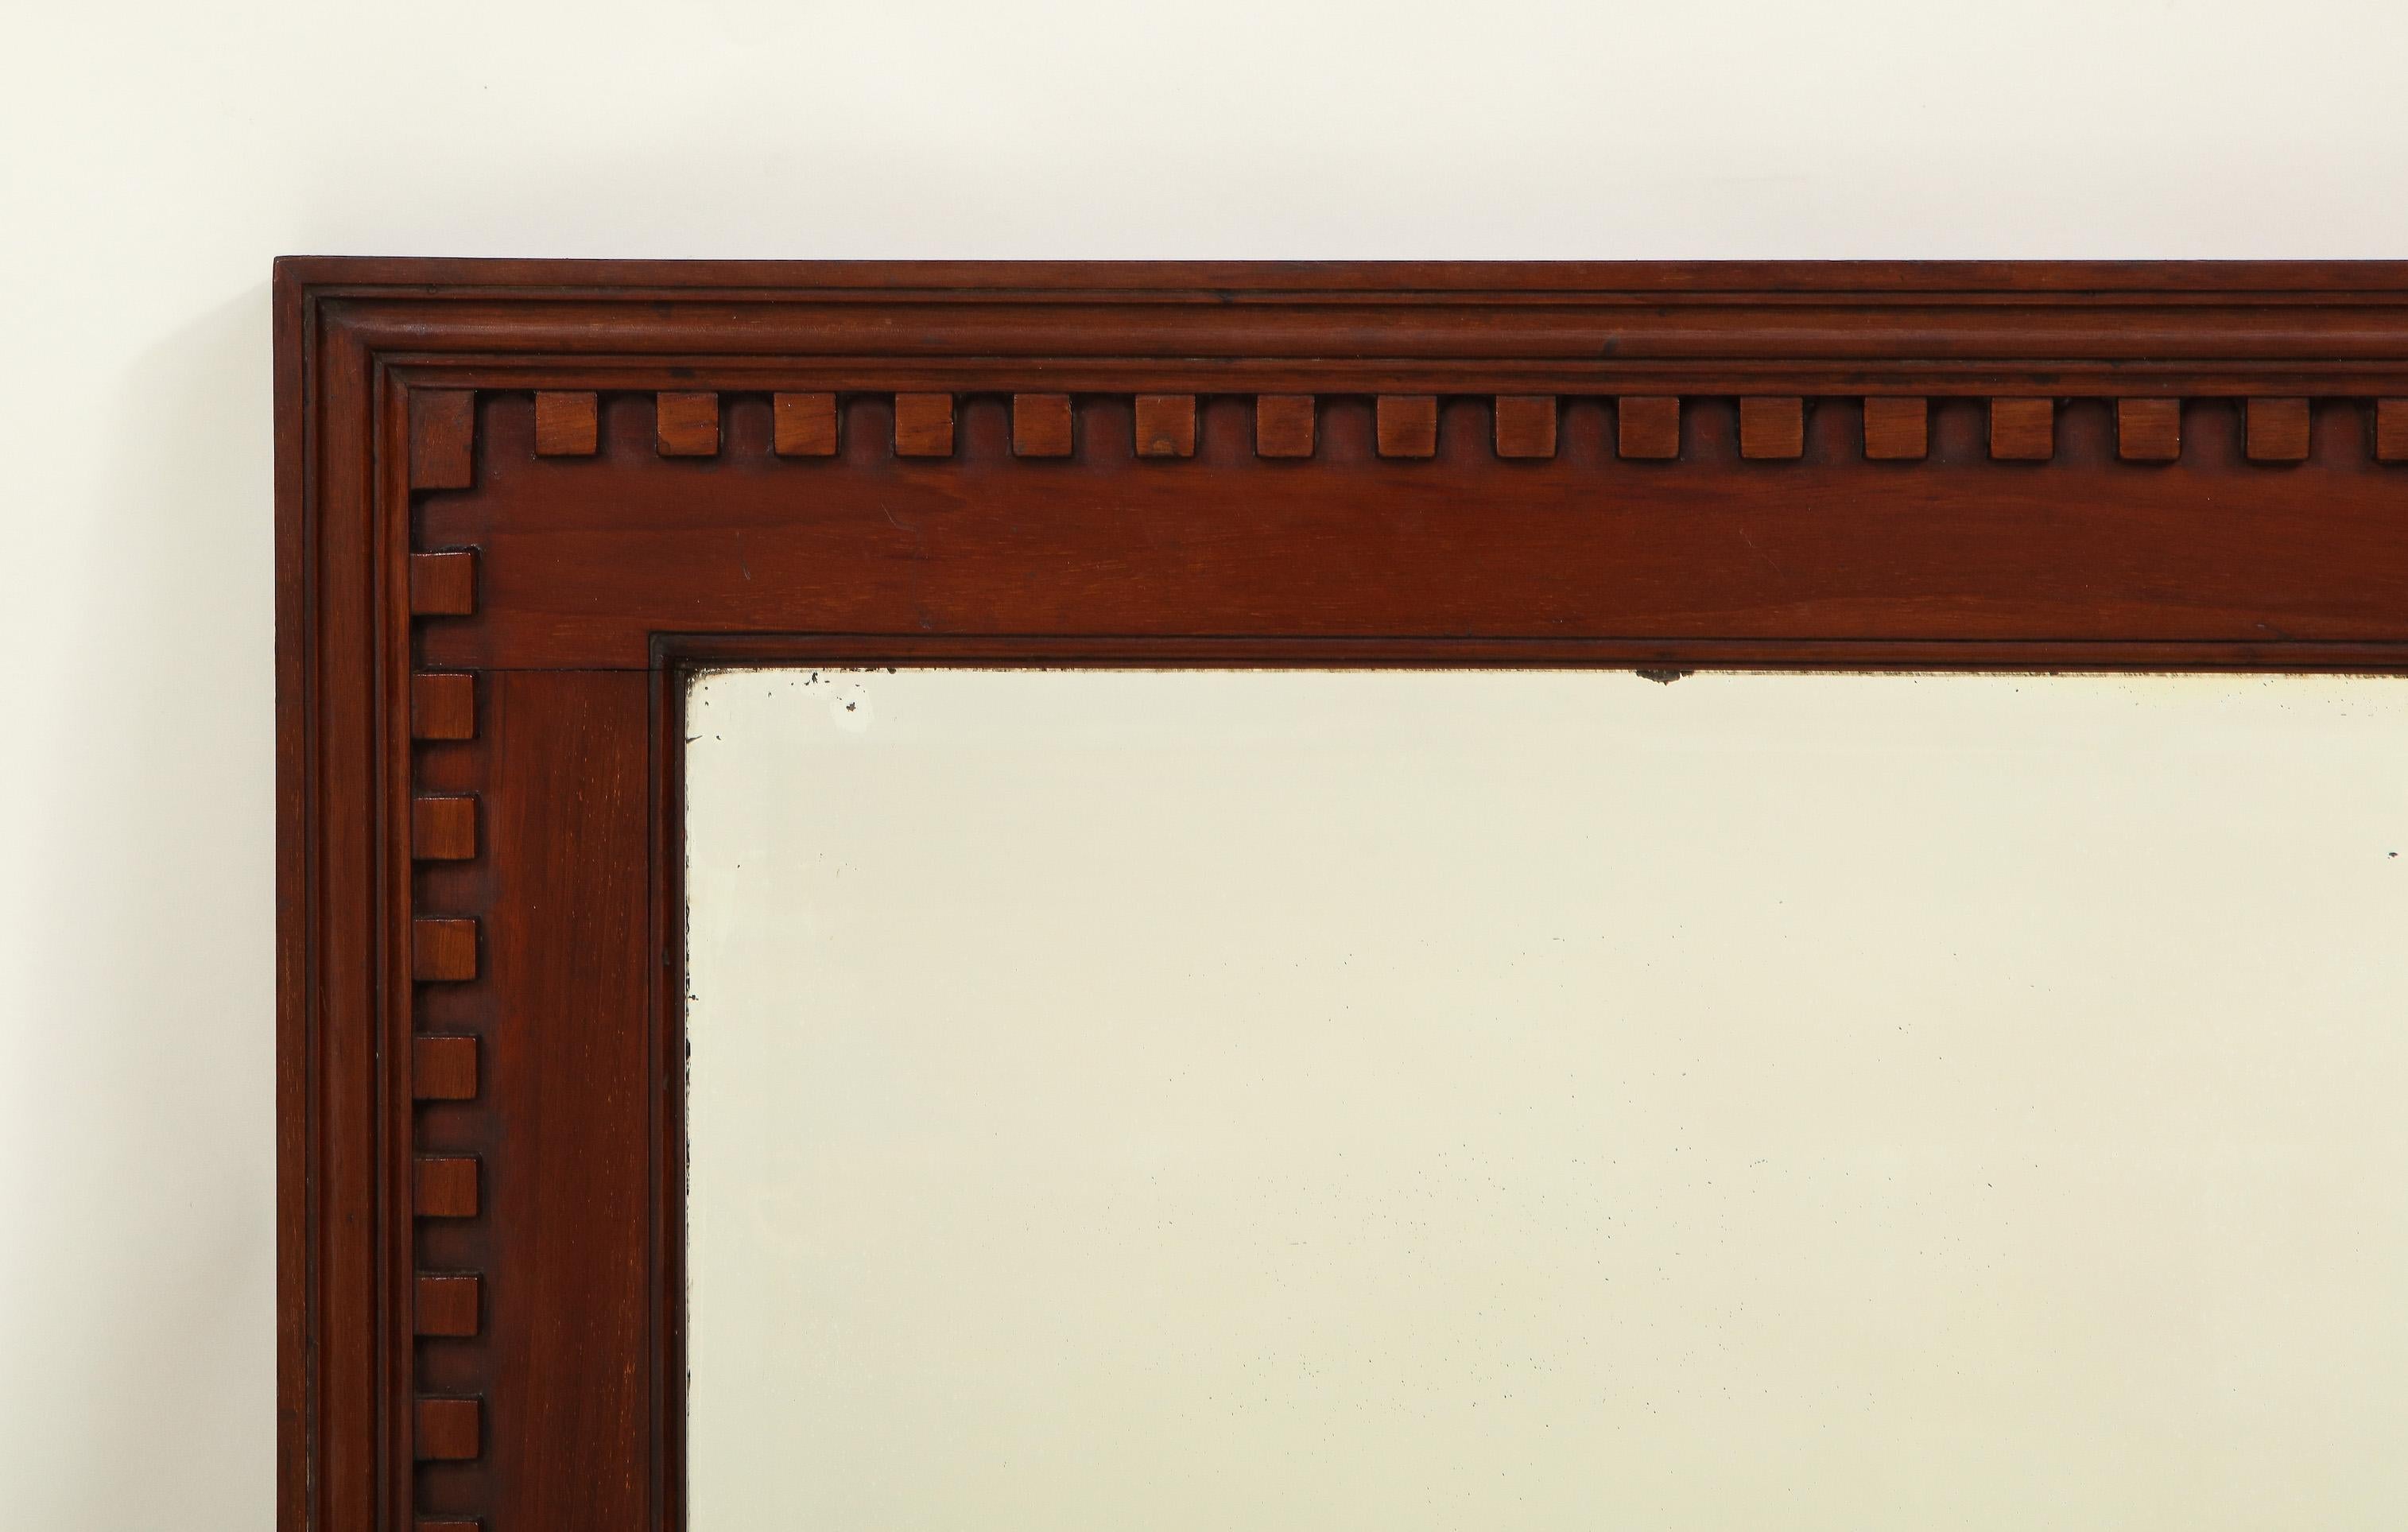 La plaque de miroir rectangulaire biseautée se trouve dans un cadre conforme en acajou massif, audacieusement sculpté de bandes dentelées. Belle pièce.